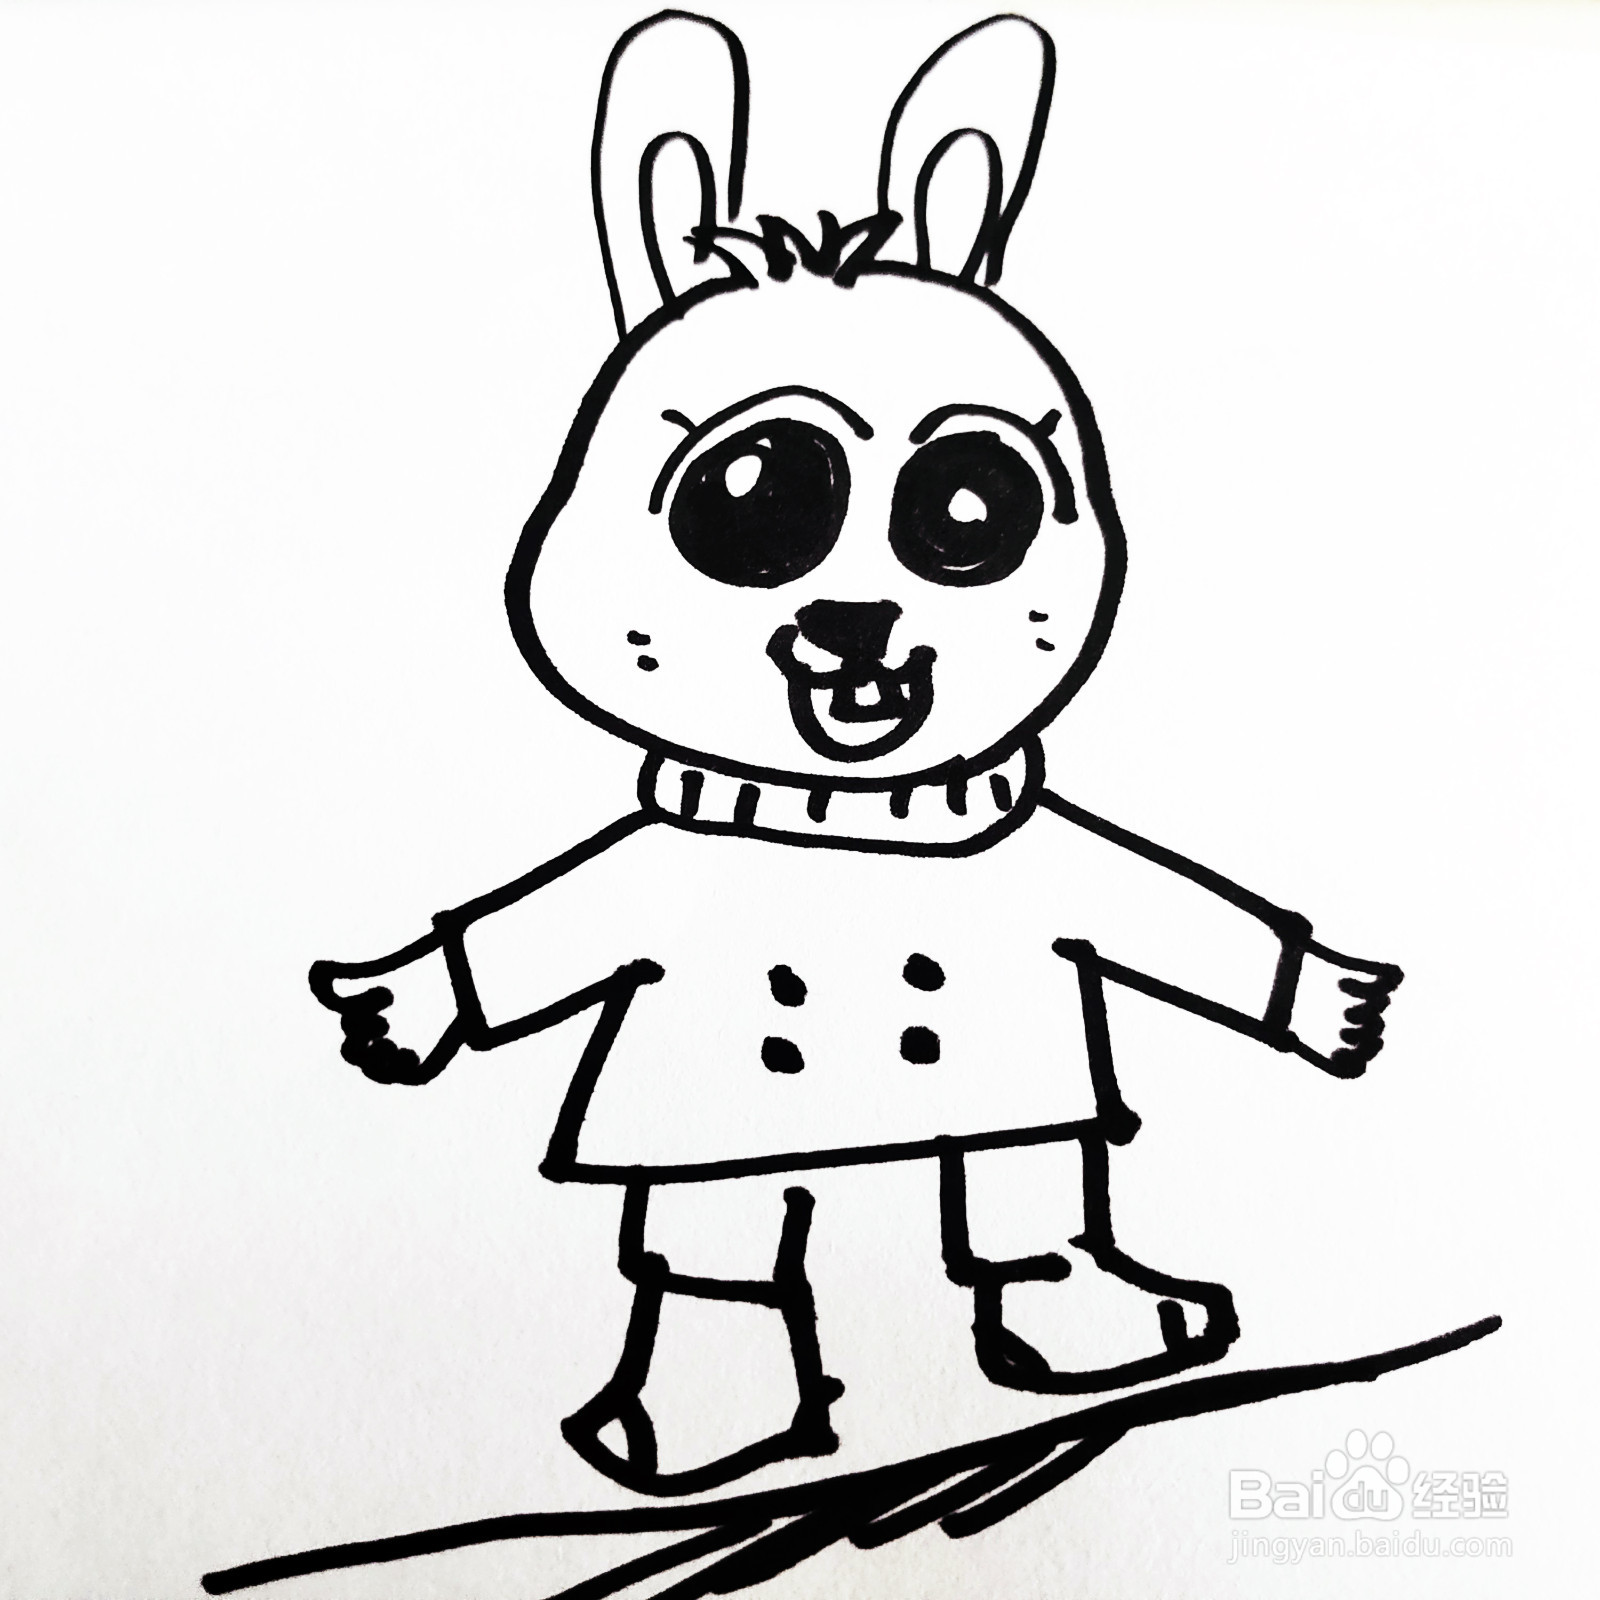 如何来画一只卡通大眼睛兔子简笔画呢?